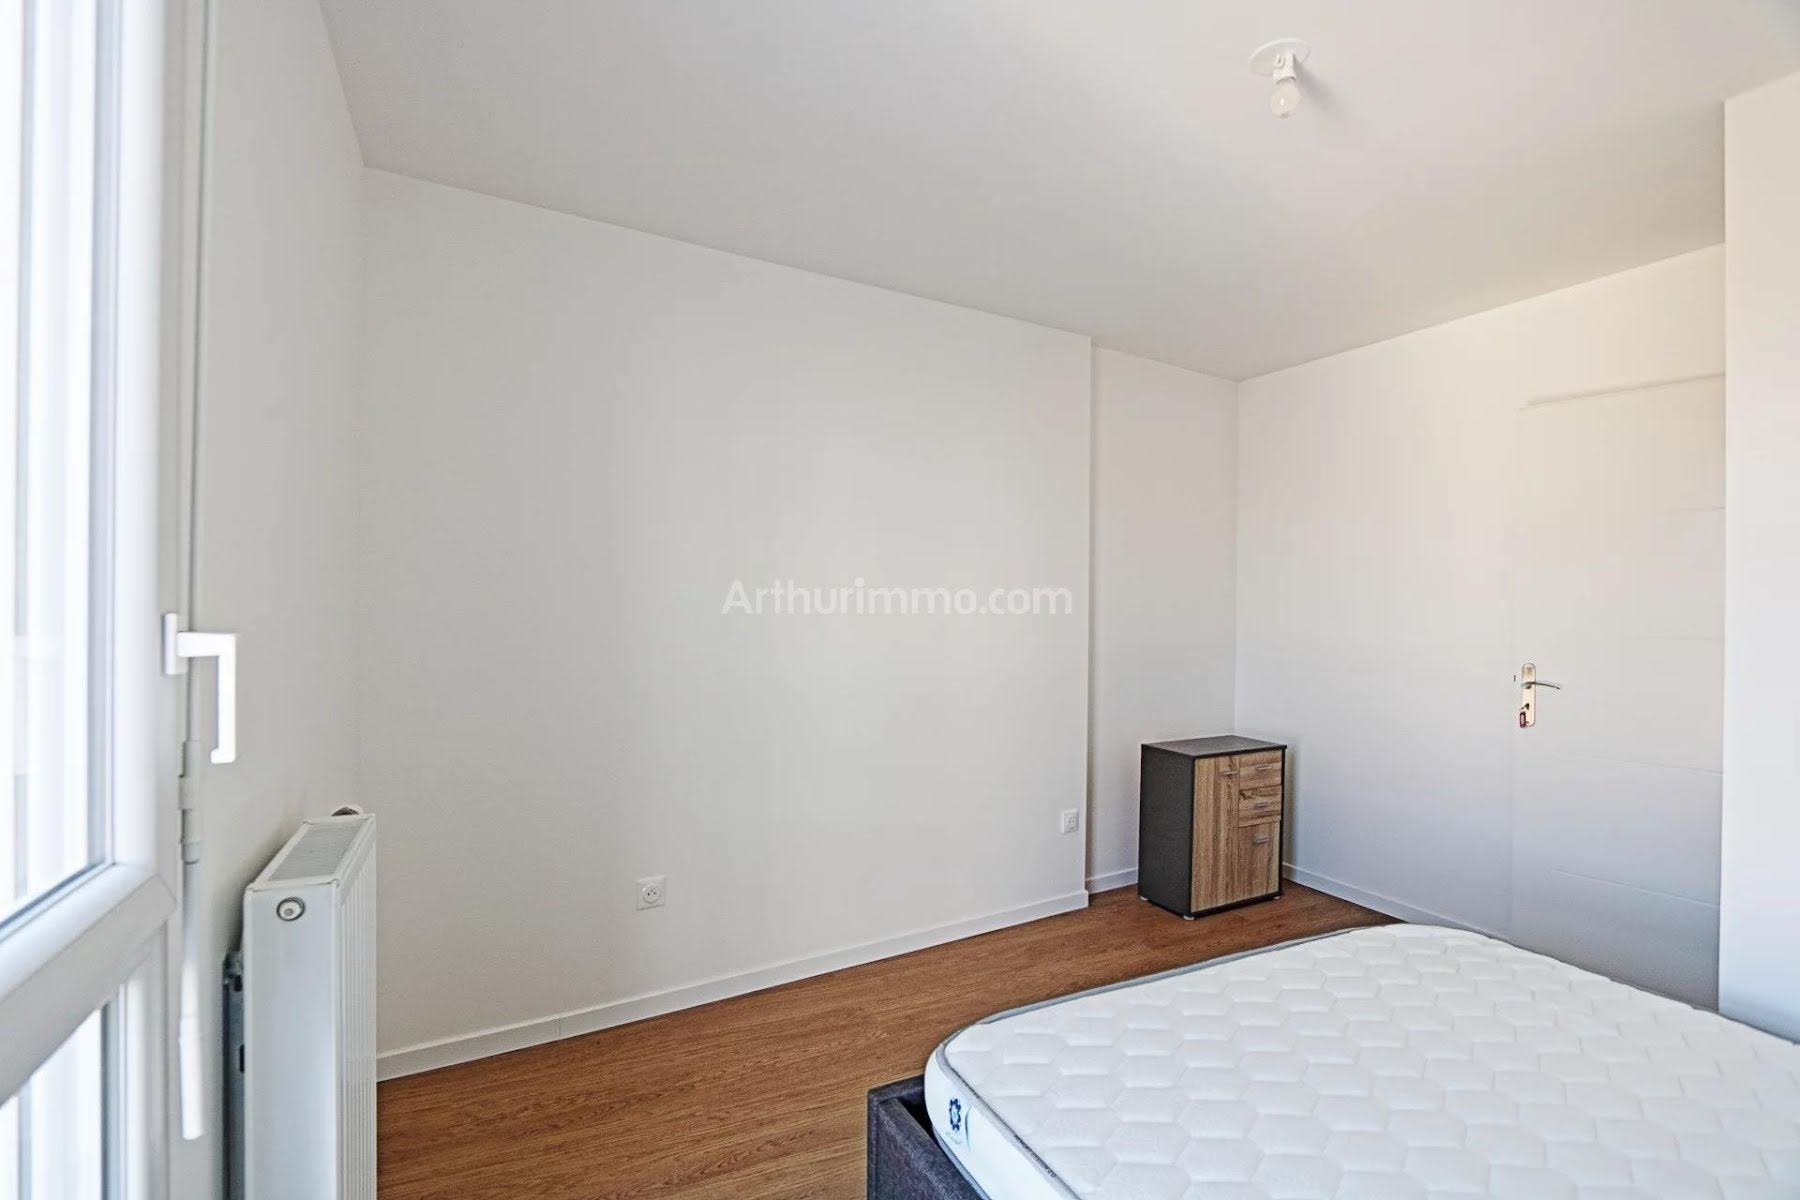 Location appartement meublé 2 pièces 42,25 m2